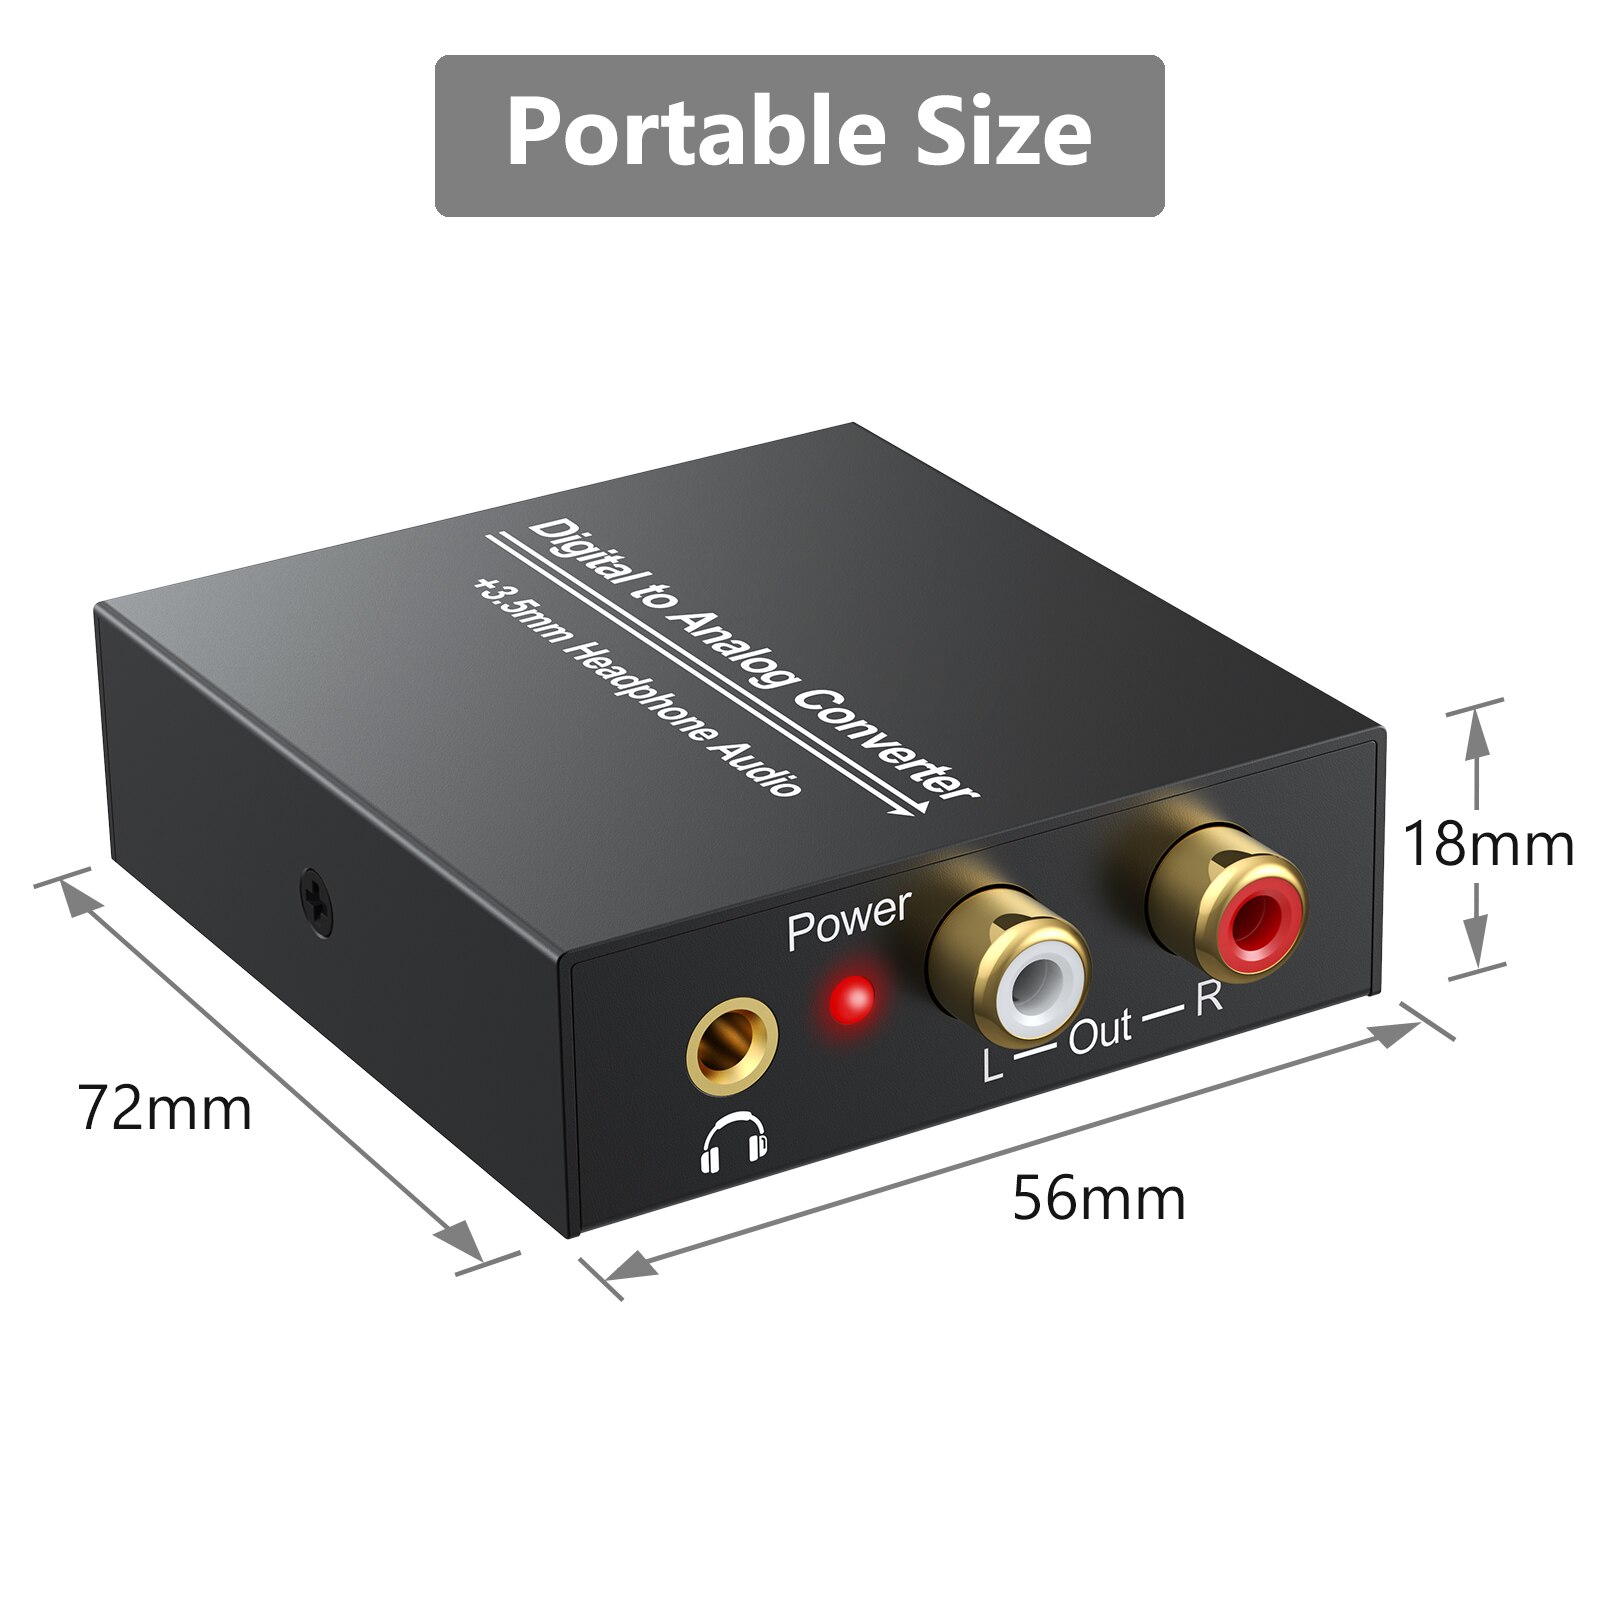 Linkfor digital til analog analog audio converter dac adapter 96 khz 24- bit s/pdif optisk toslink koaksial til analog rca 3.5mm